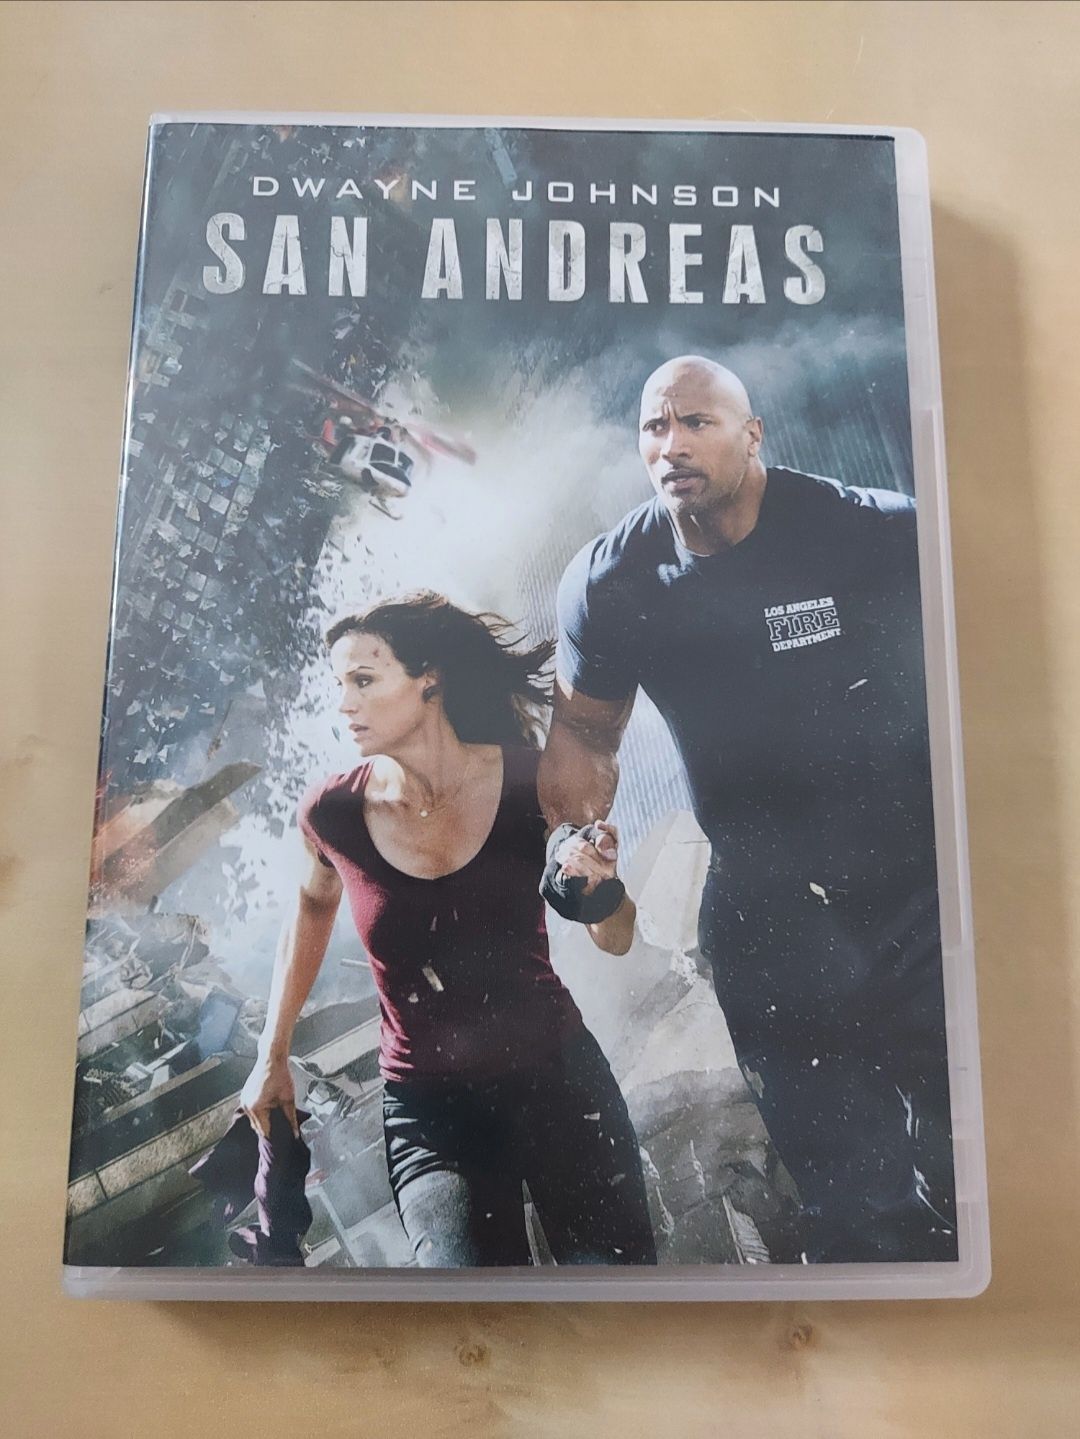 San Andreas Dwayne Johnson trzymający w napięciu film DVD pełen akcji